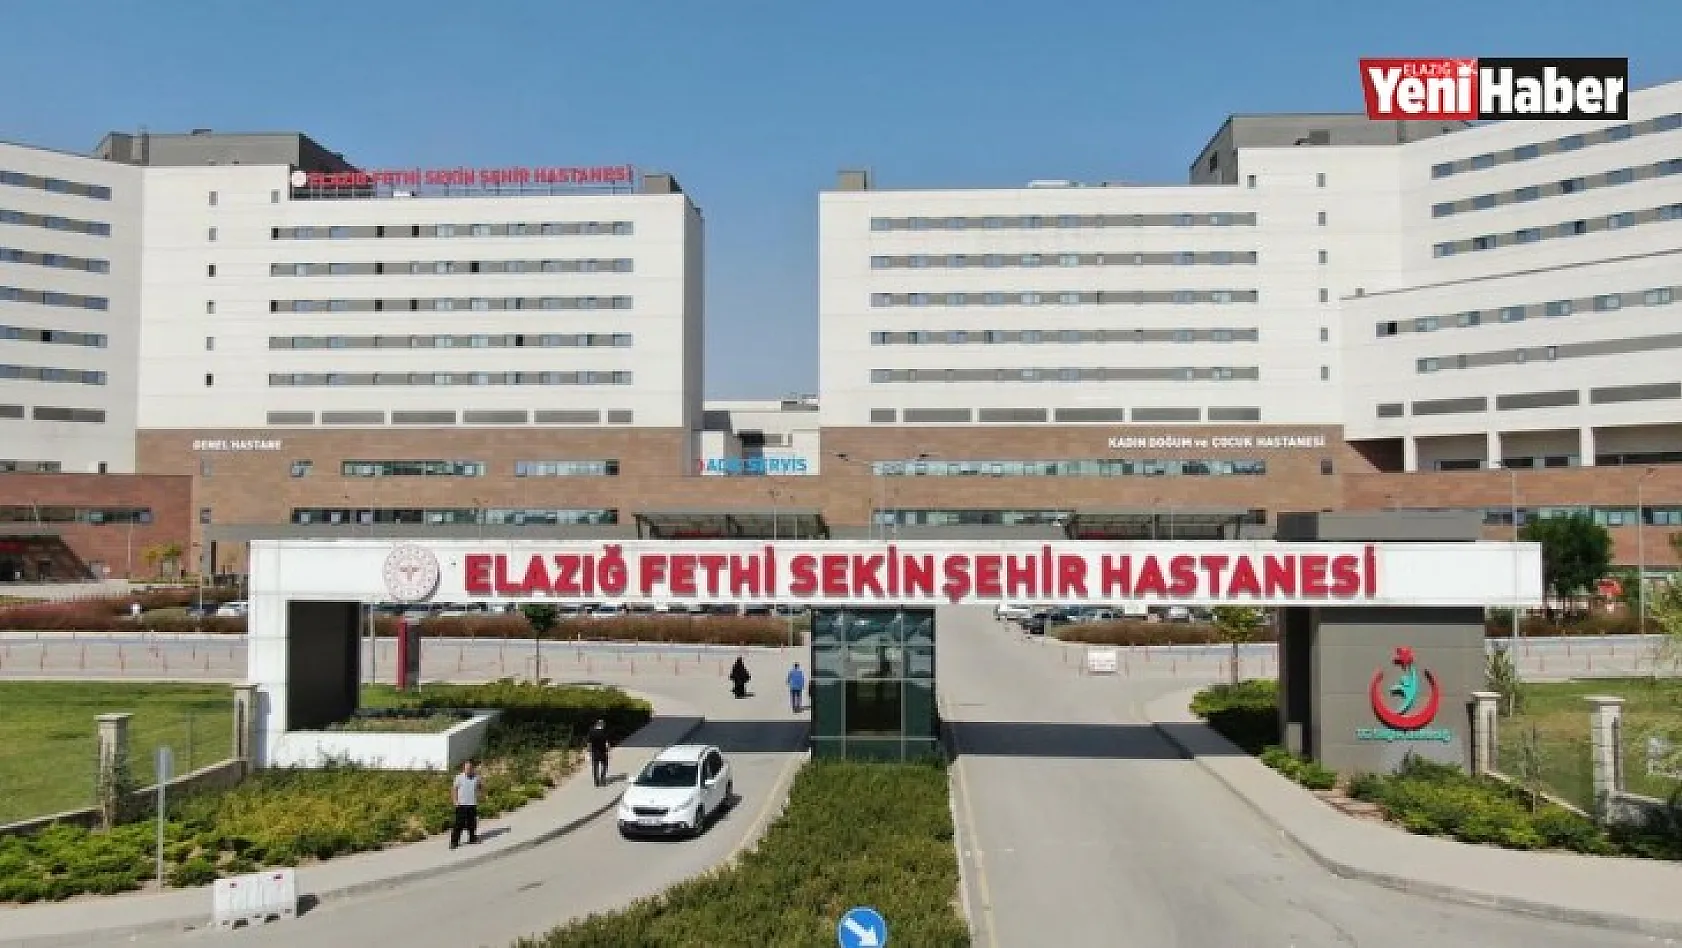 Bölgenin Tek Şehir Hastanesi 1 Milyondan Fazla Hastaya Şifa Dağıttı!